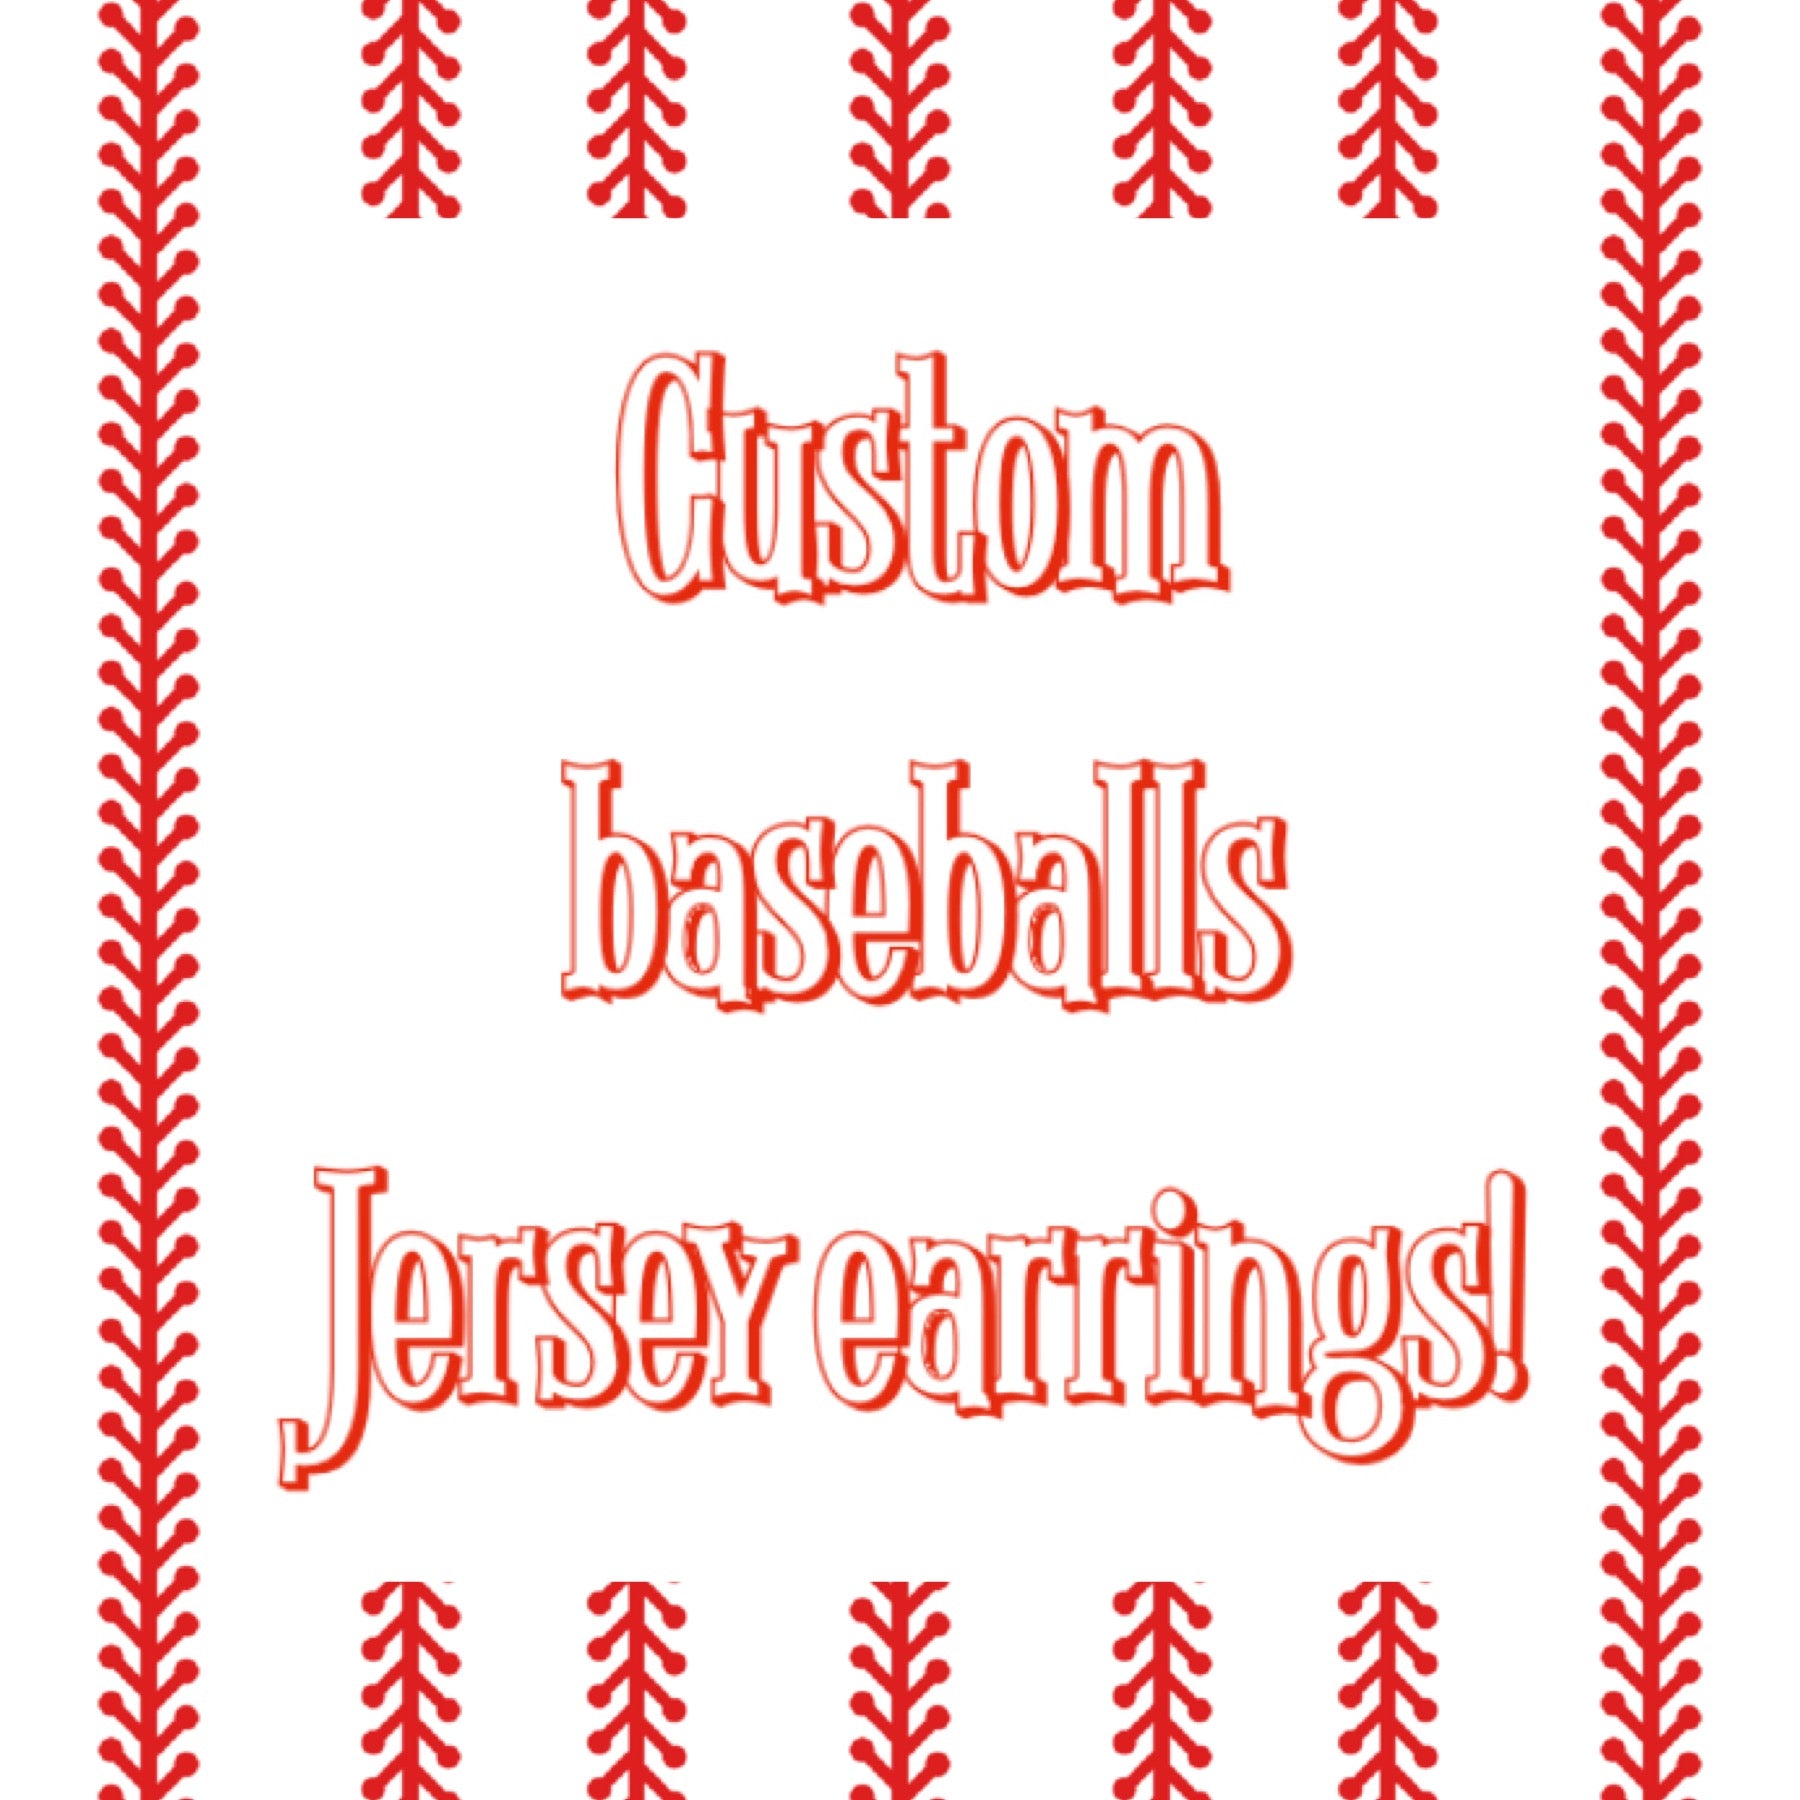 Custom baseball jerseys